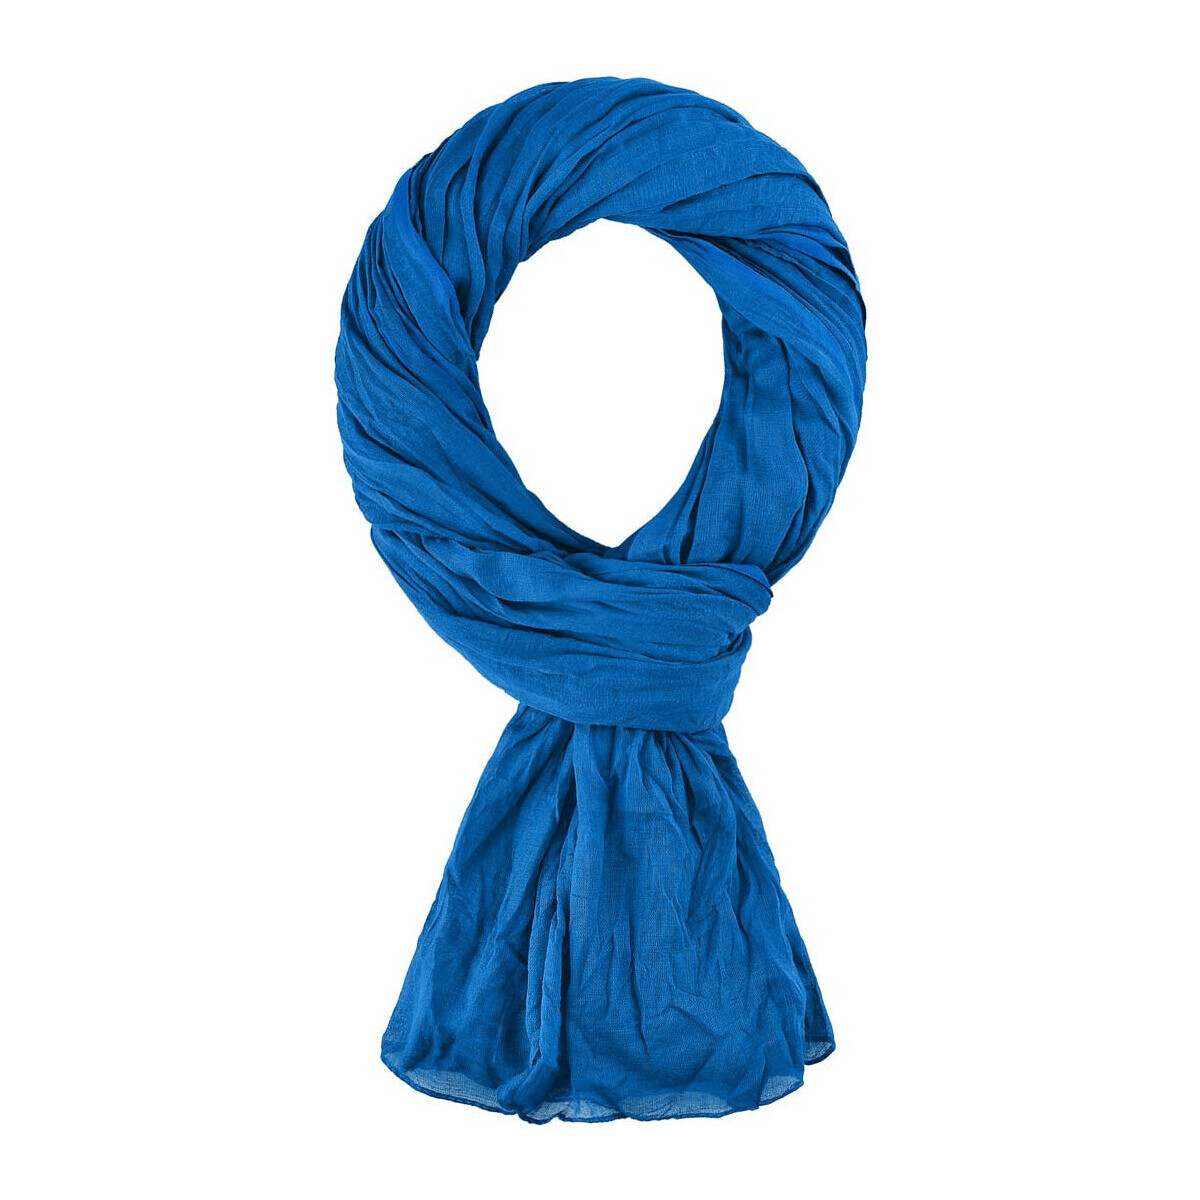 Accessoires textile Echarpes / Etoles / Foulards Allée Du Foulard Chèche coton uni Bleu